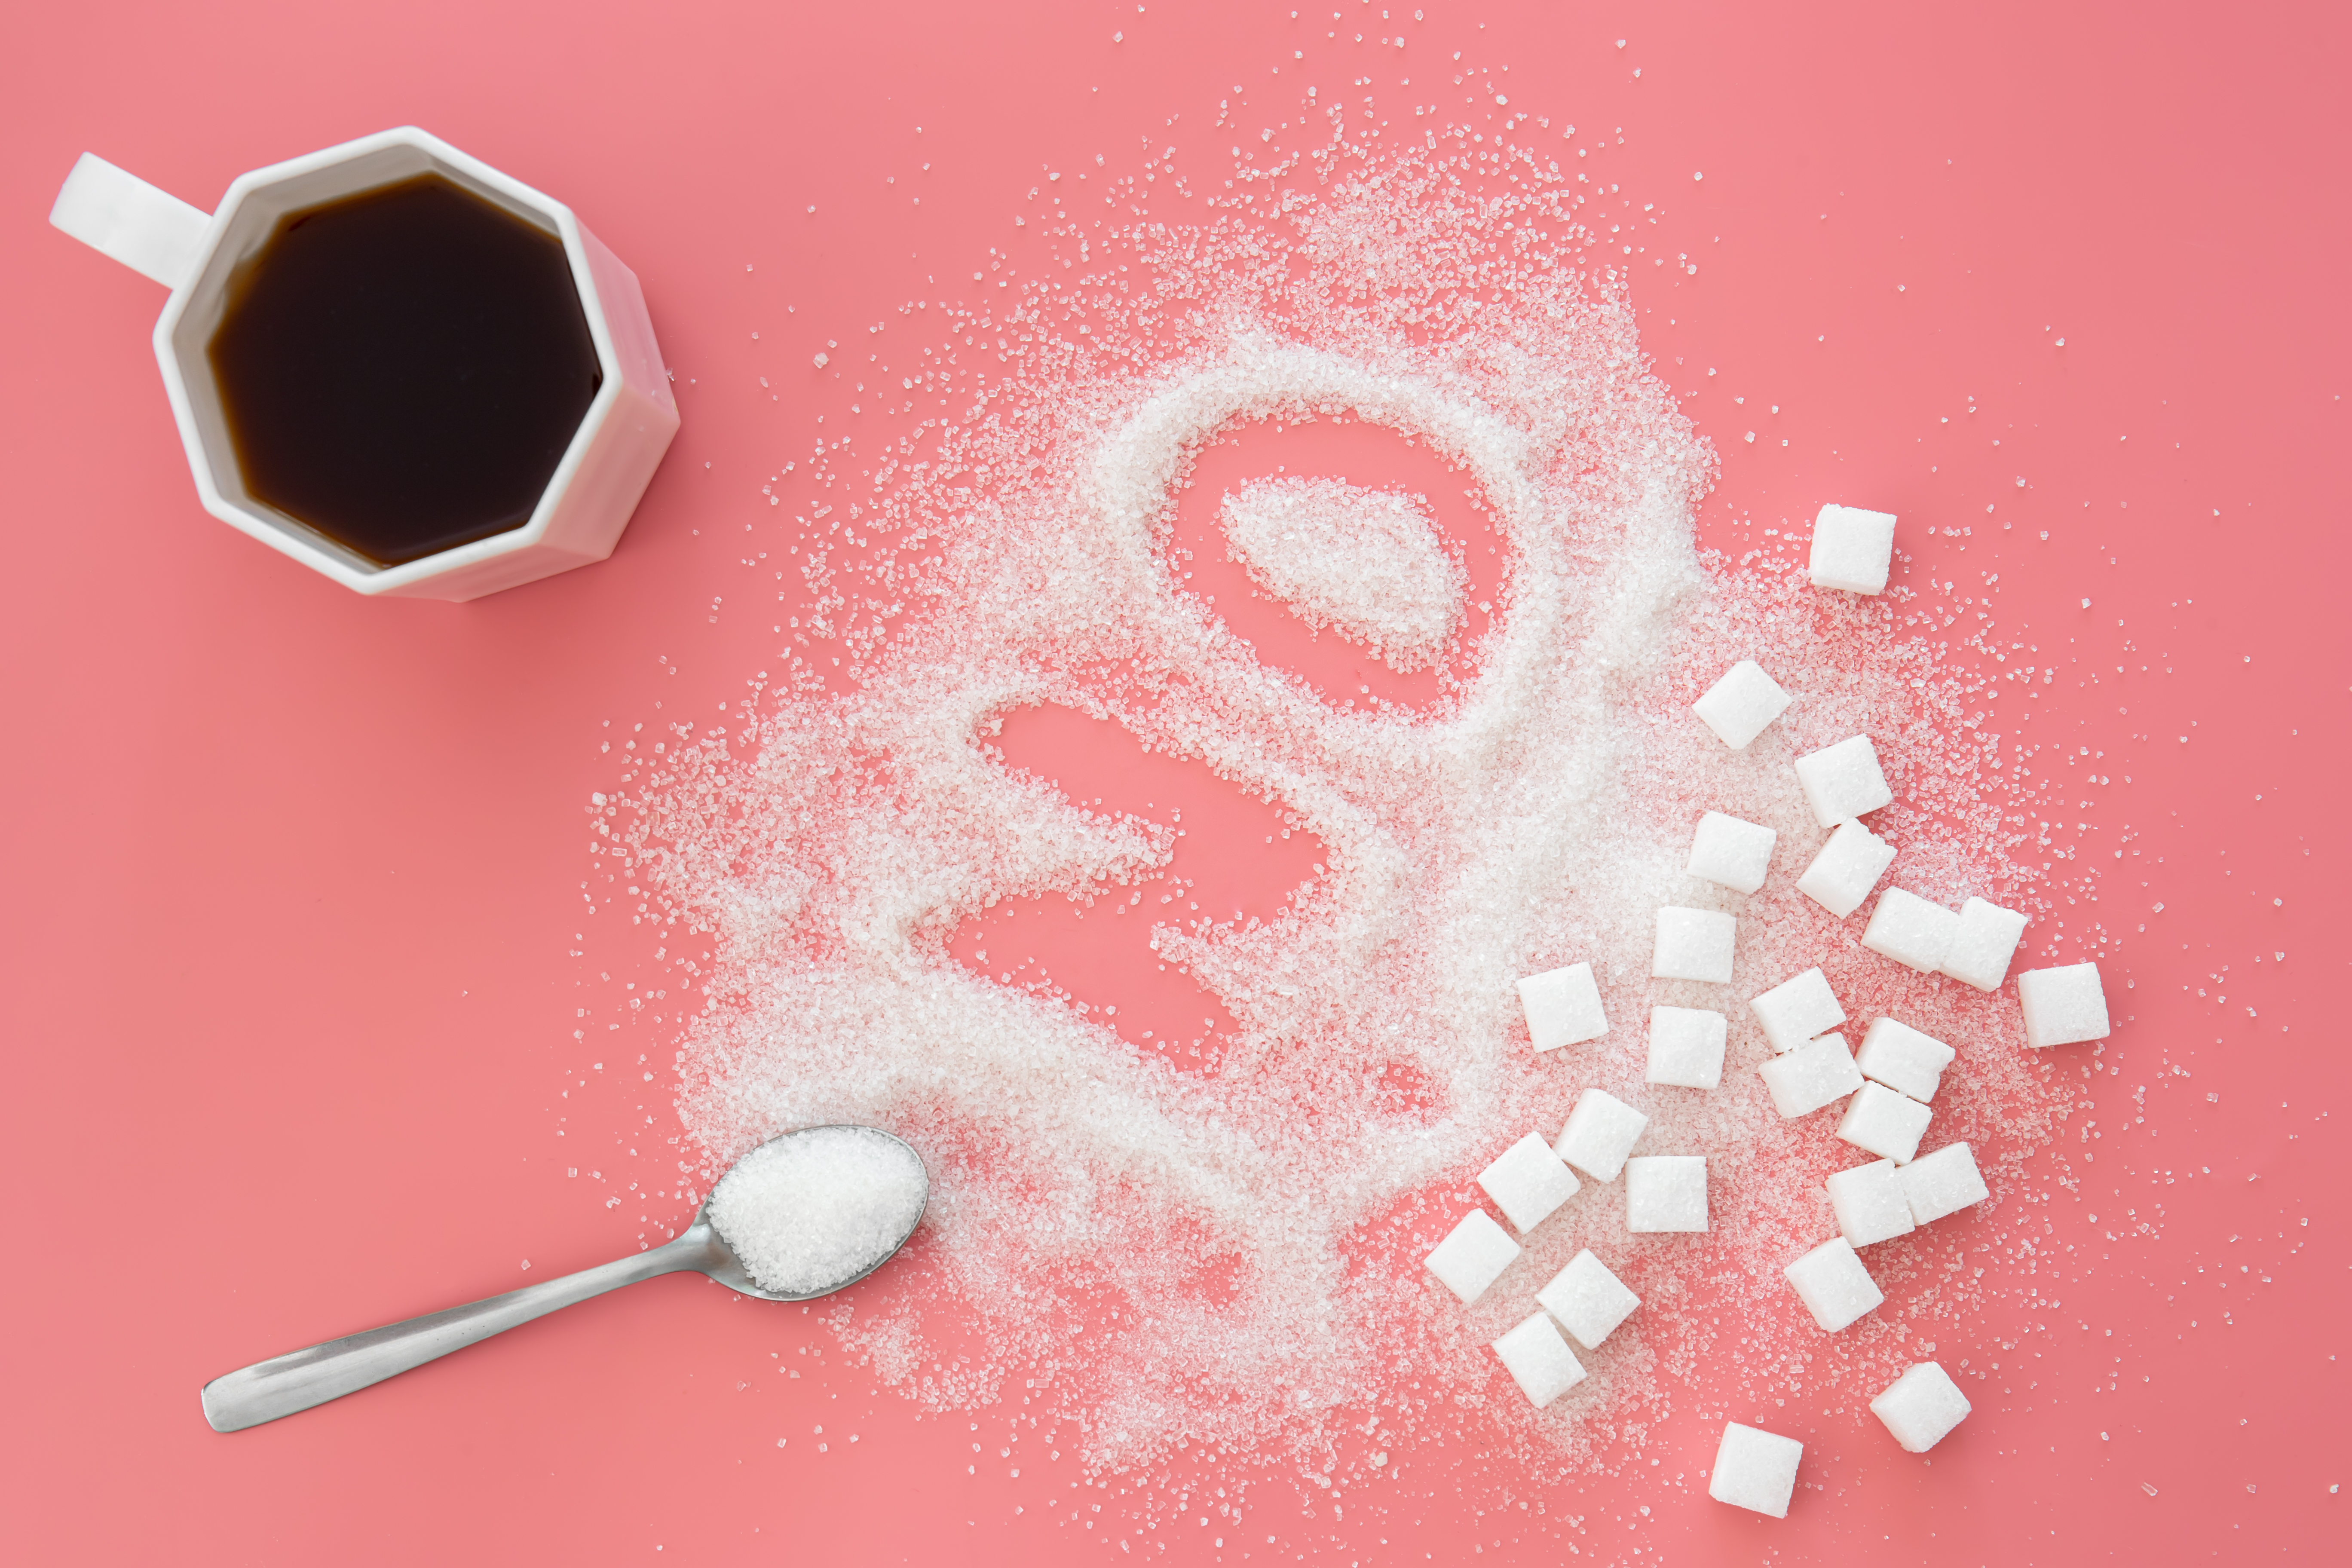 При злоупотреблении сахаром организм может лишиться чувствительности к инсулину. Фото